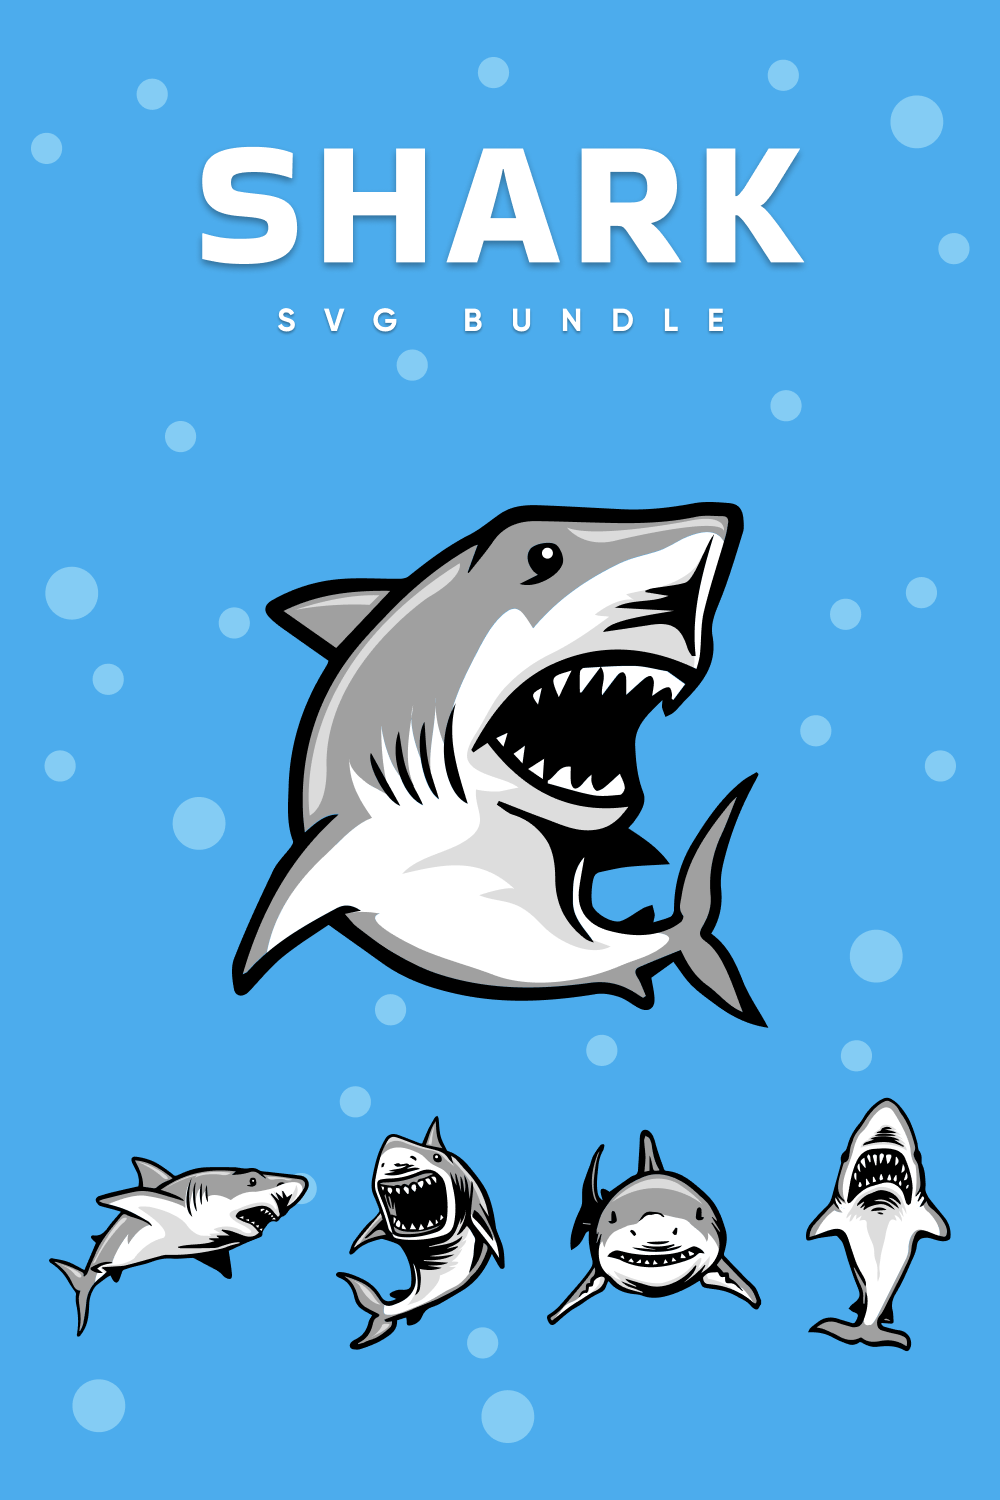 Shark SVG Files Bundle pinterest image.